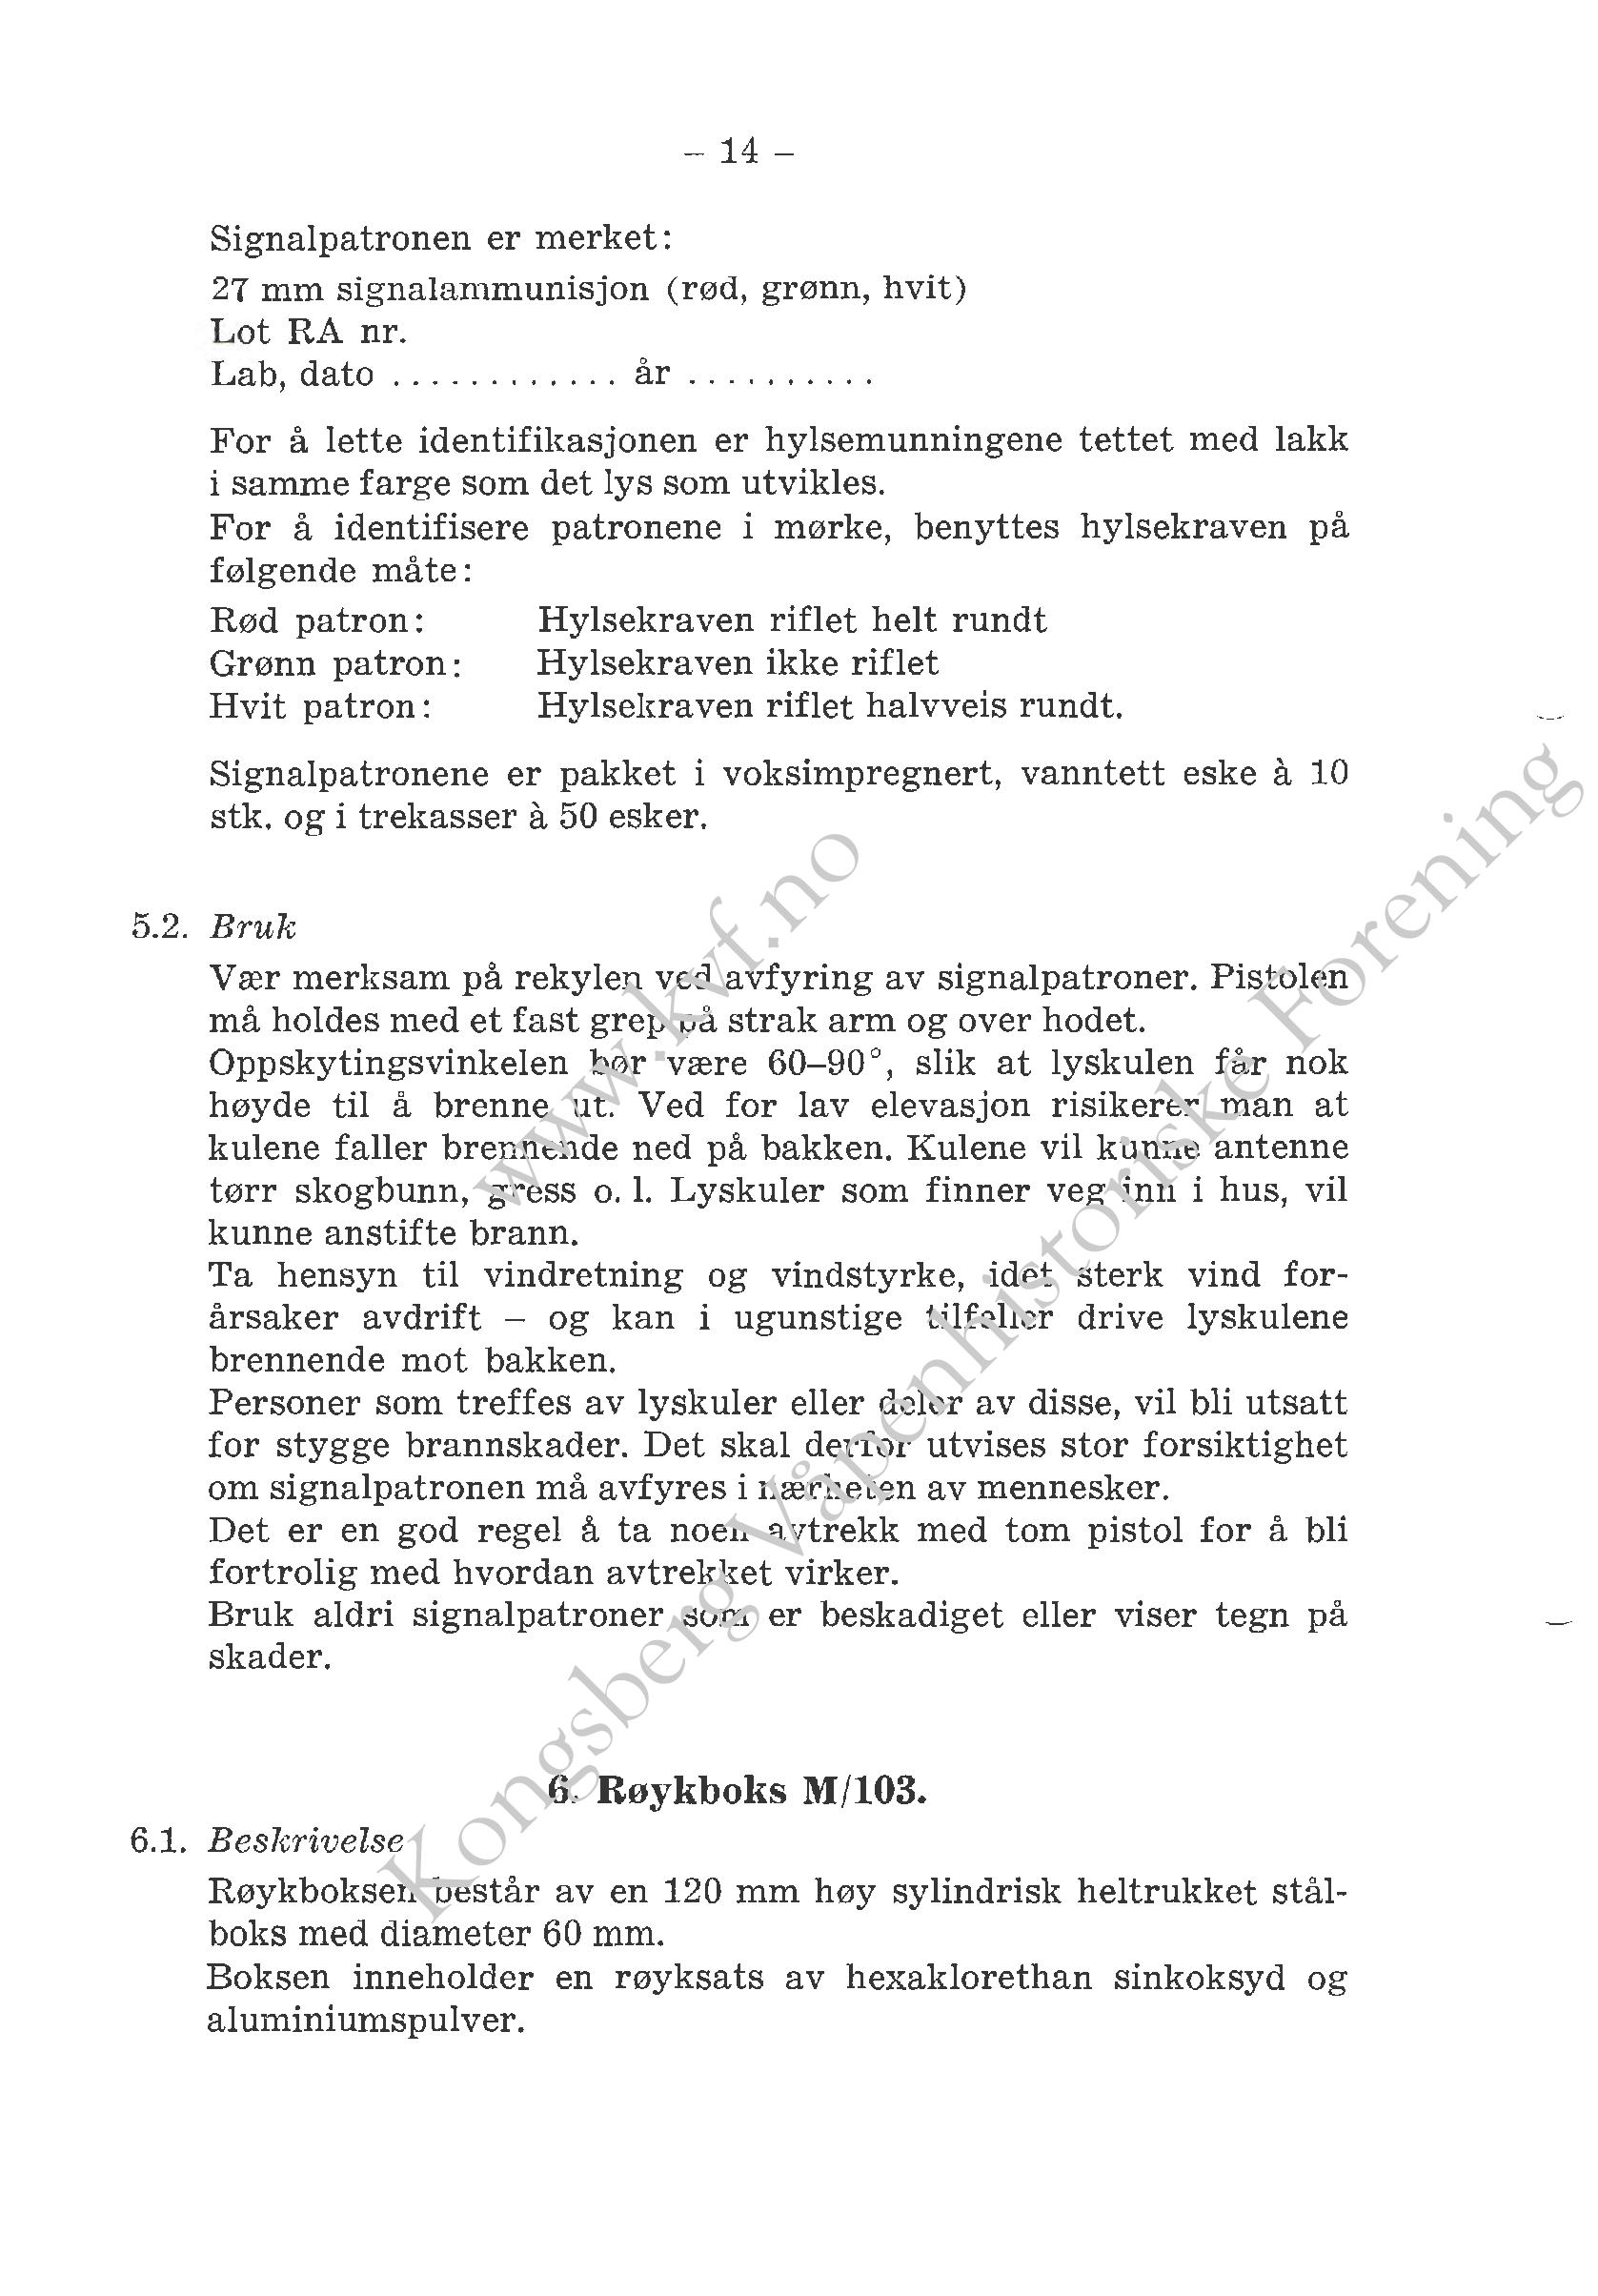 ./doc/reglement/Gasspistol/Beskrivelse-Signal-Gasspistol-1966-page-017.jpg